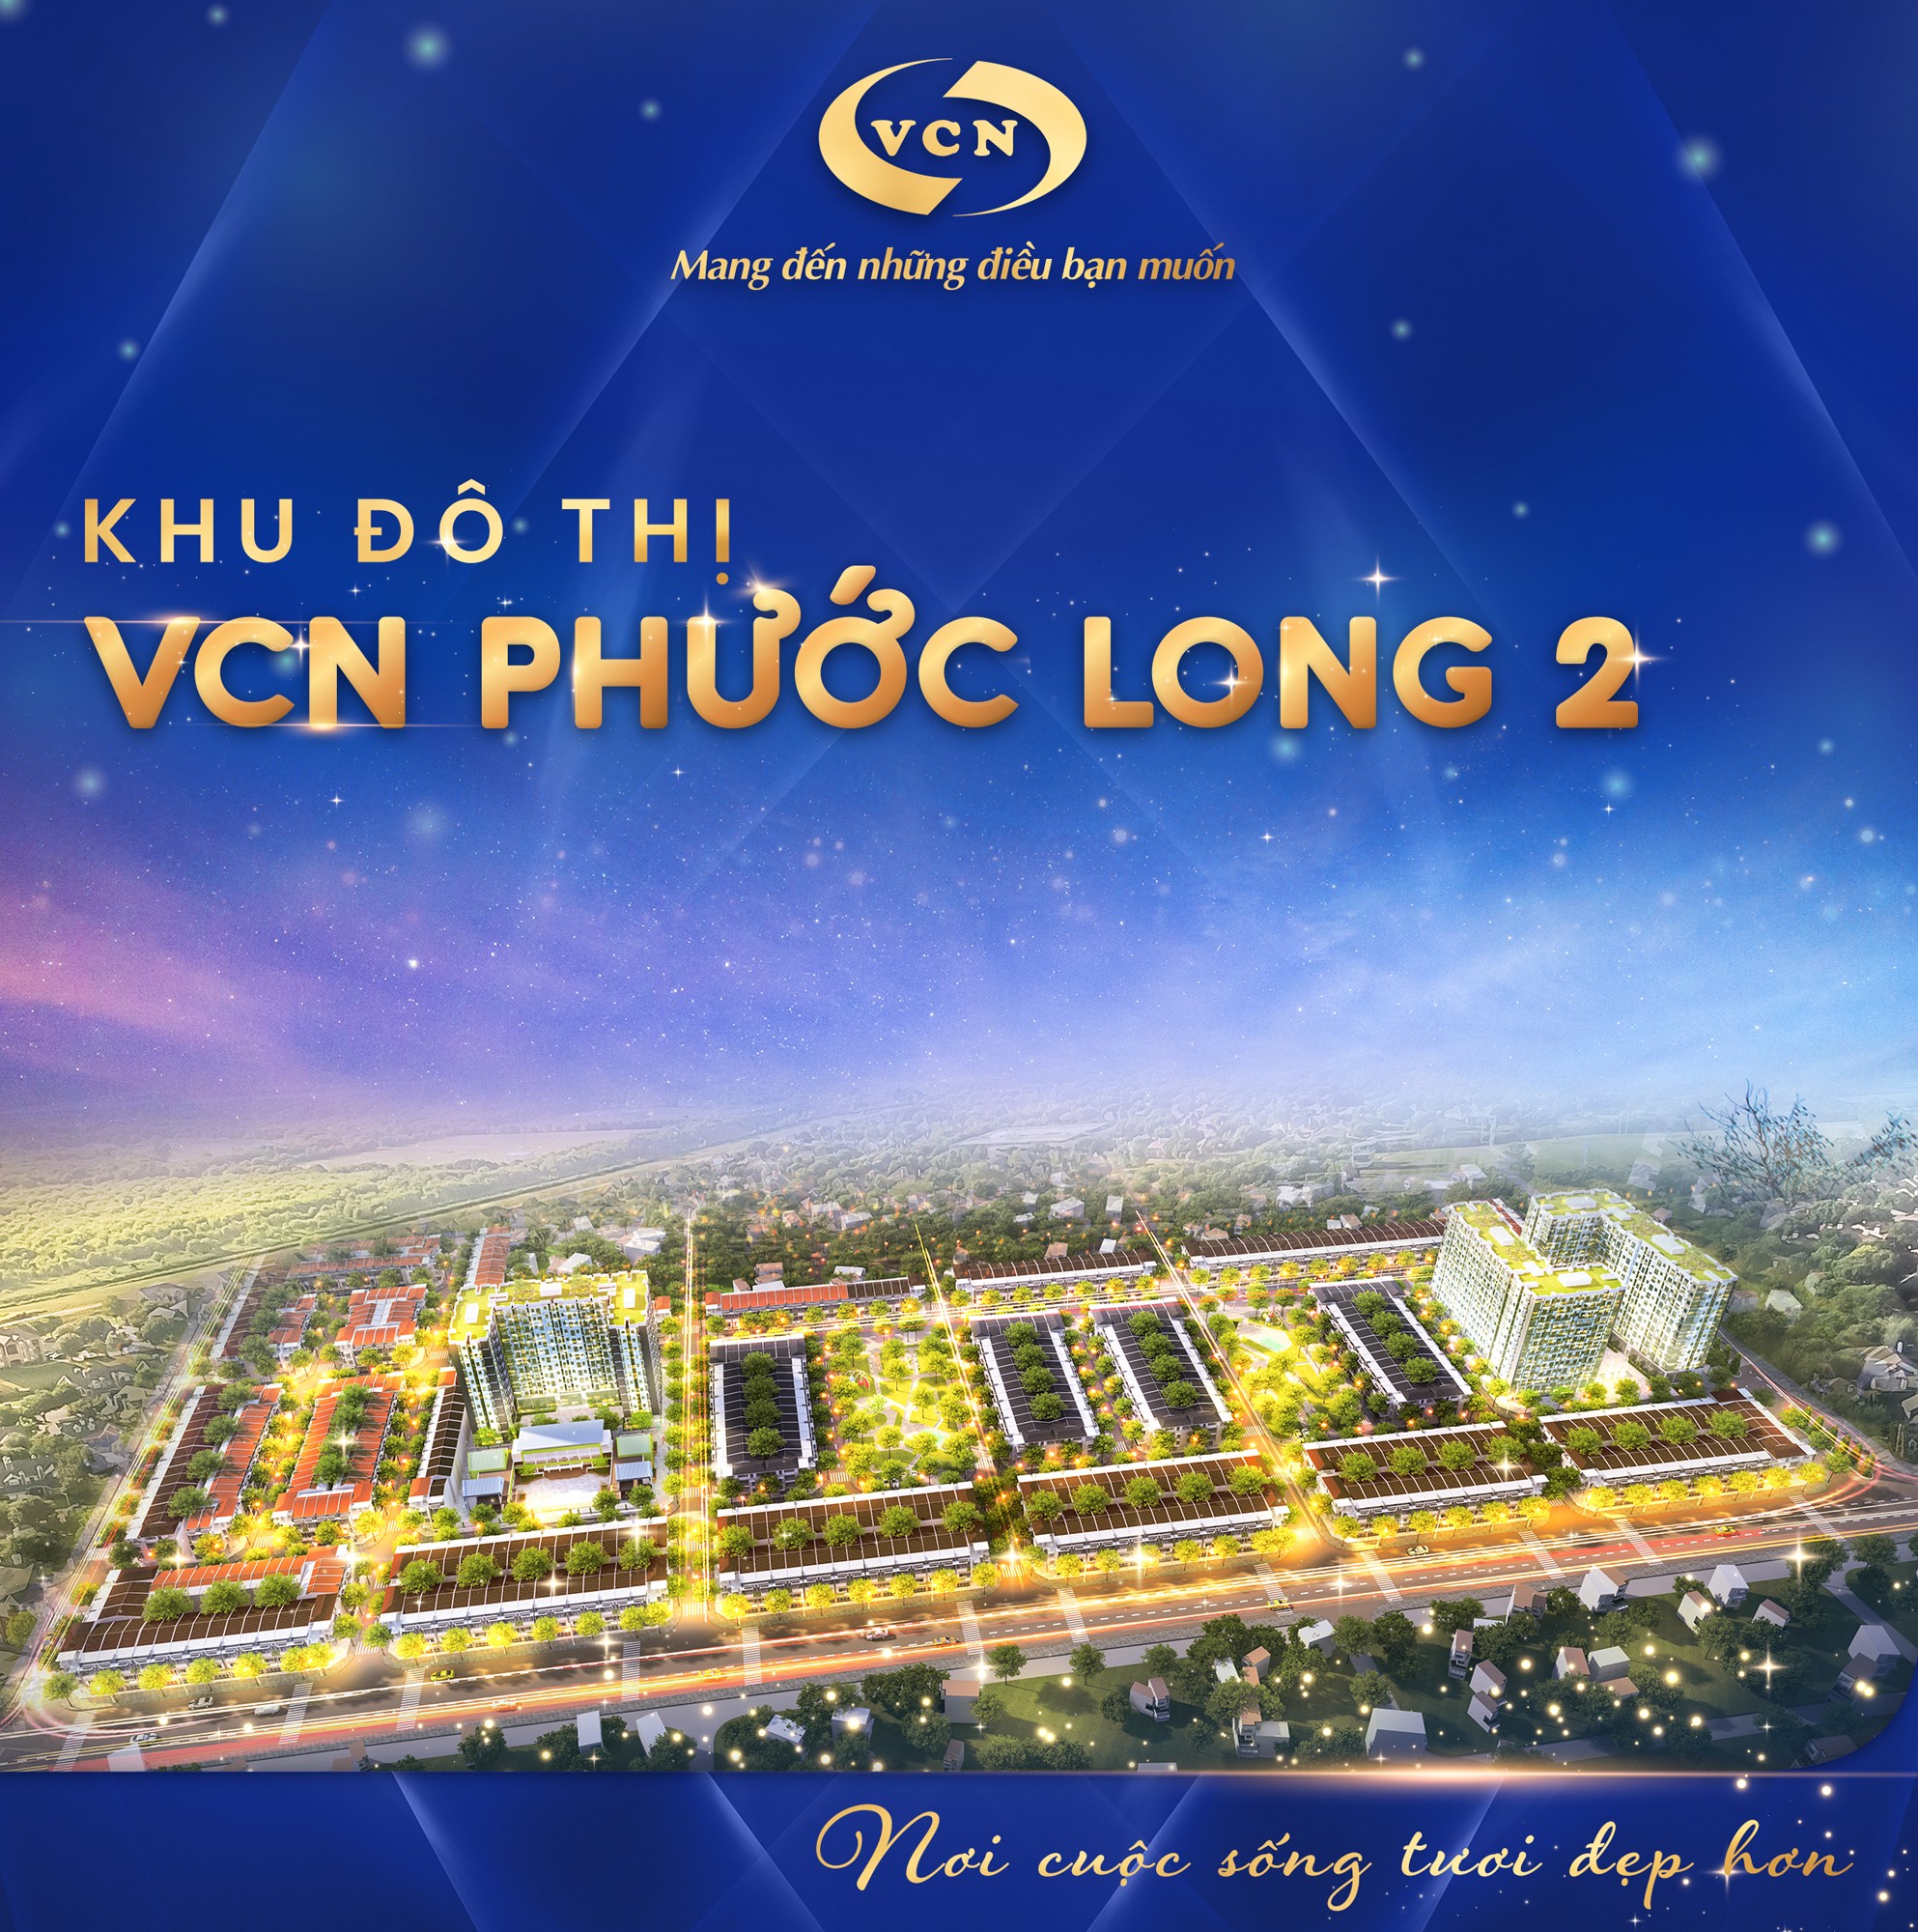 Khu đô thị VCN Phước Long 2